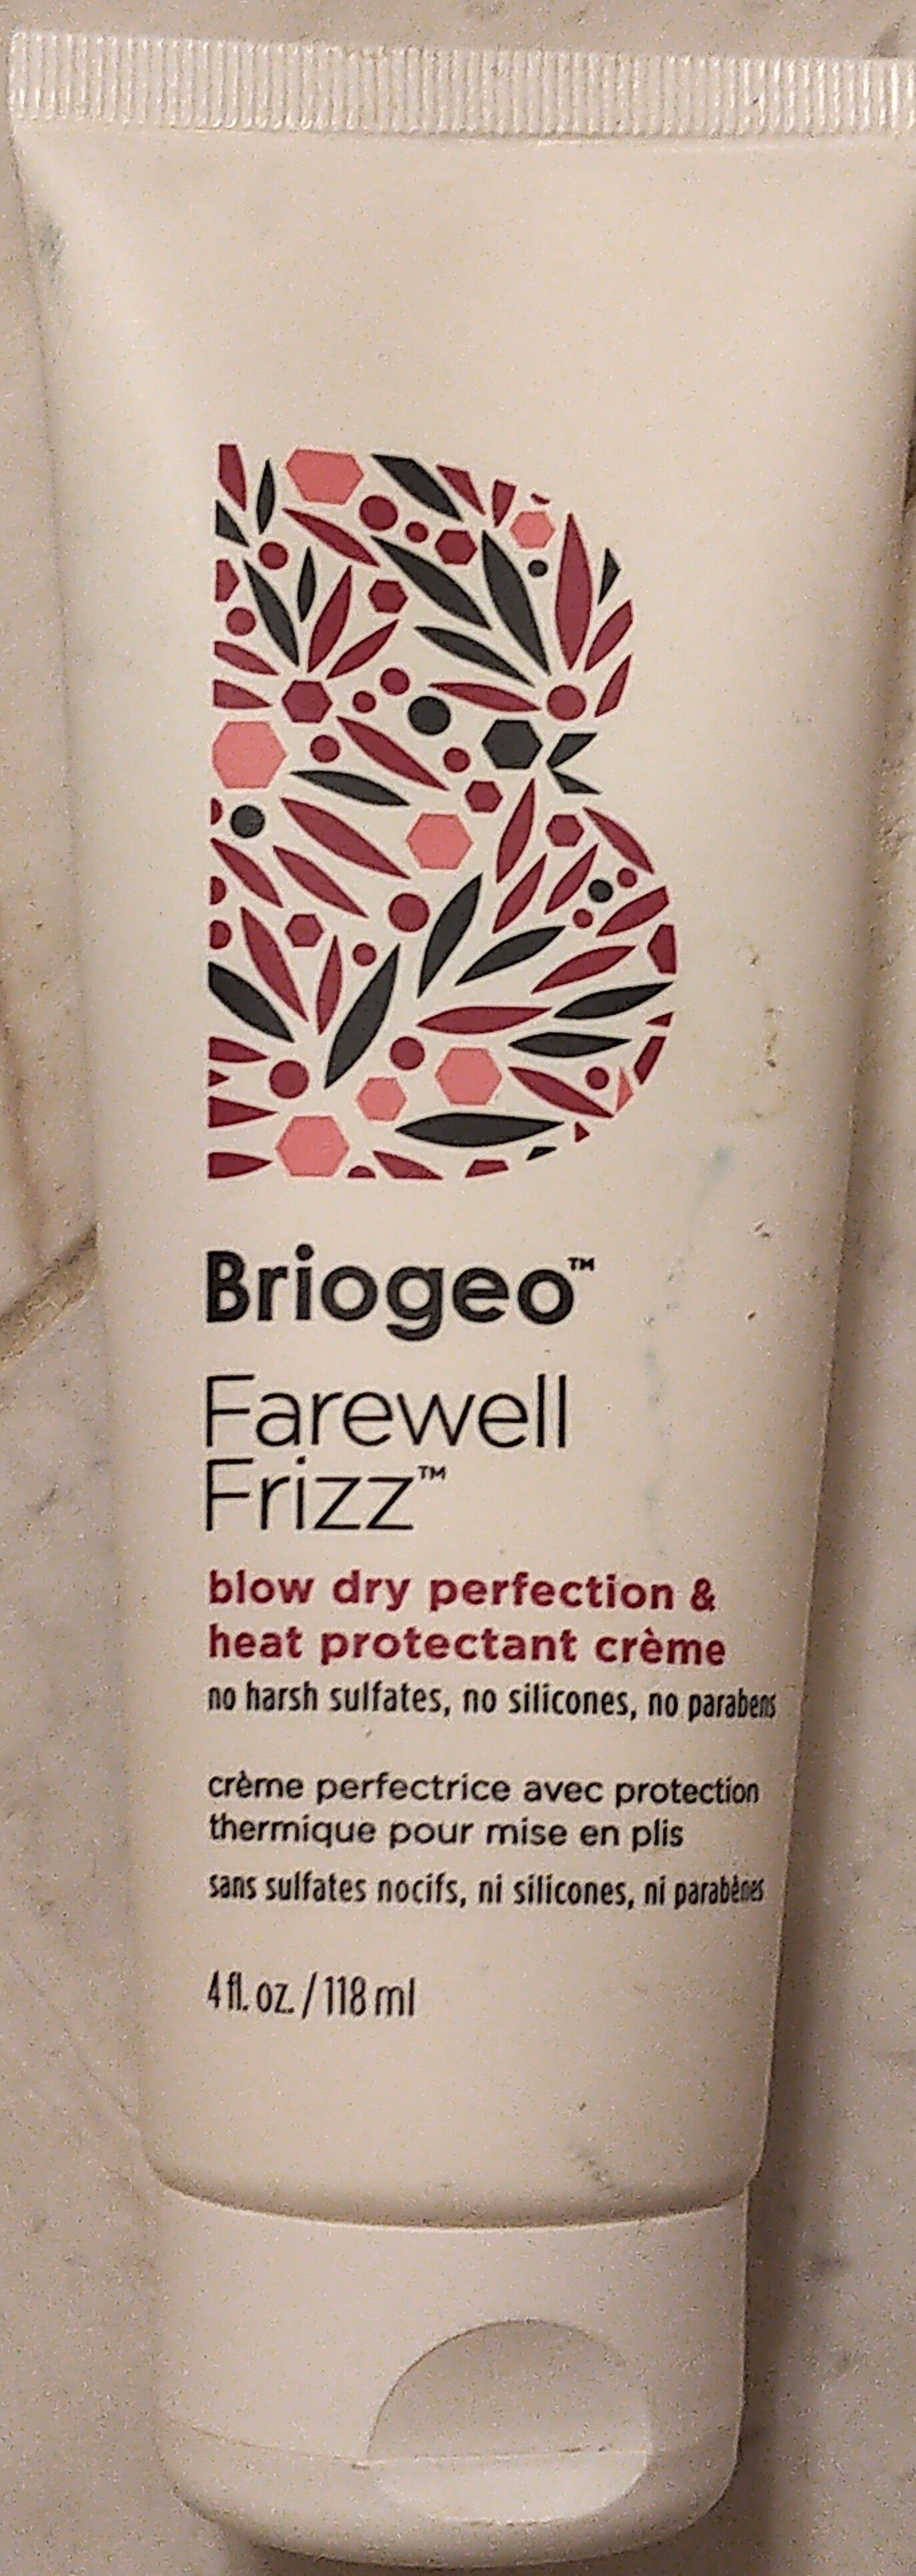 Briogeo Farewell Frizz Blow Dry Perfection & Heat Protectant Crème - Produit - fr